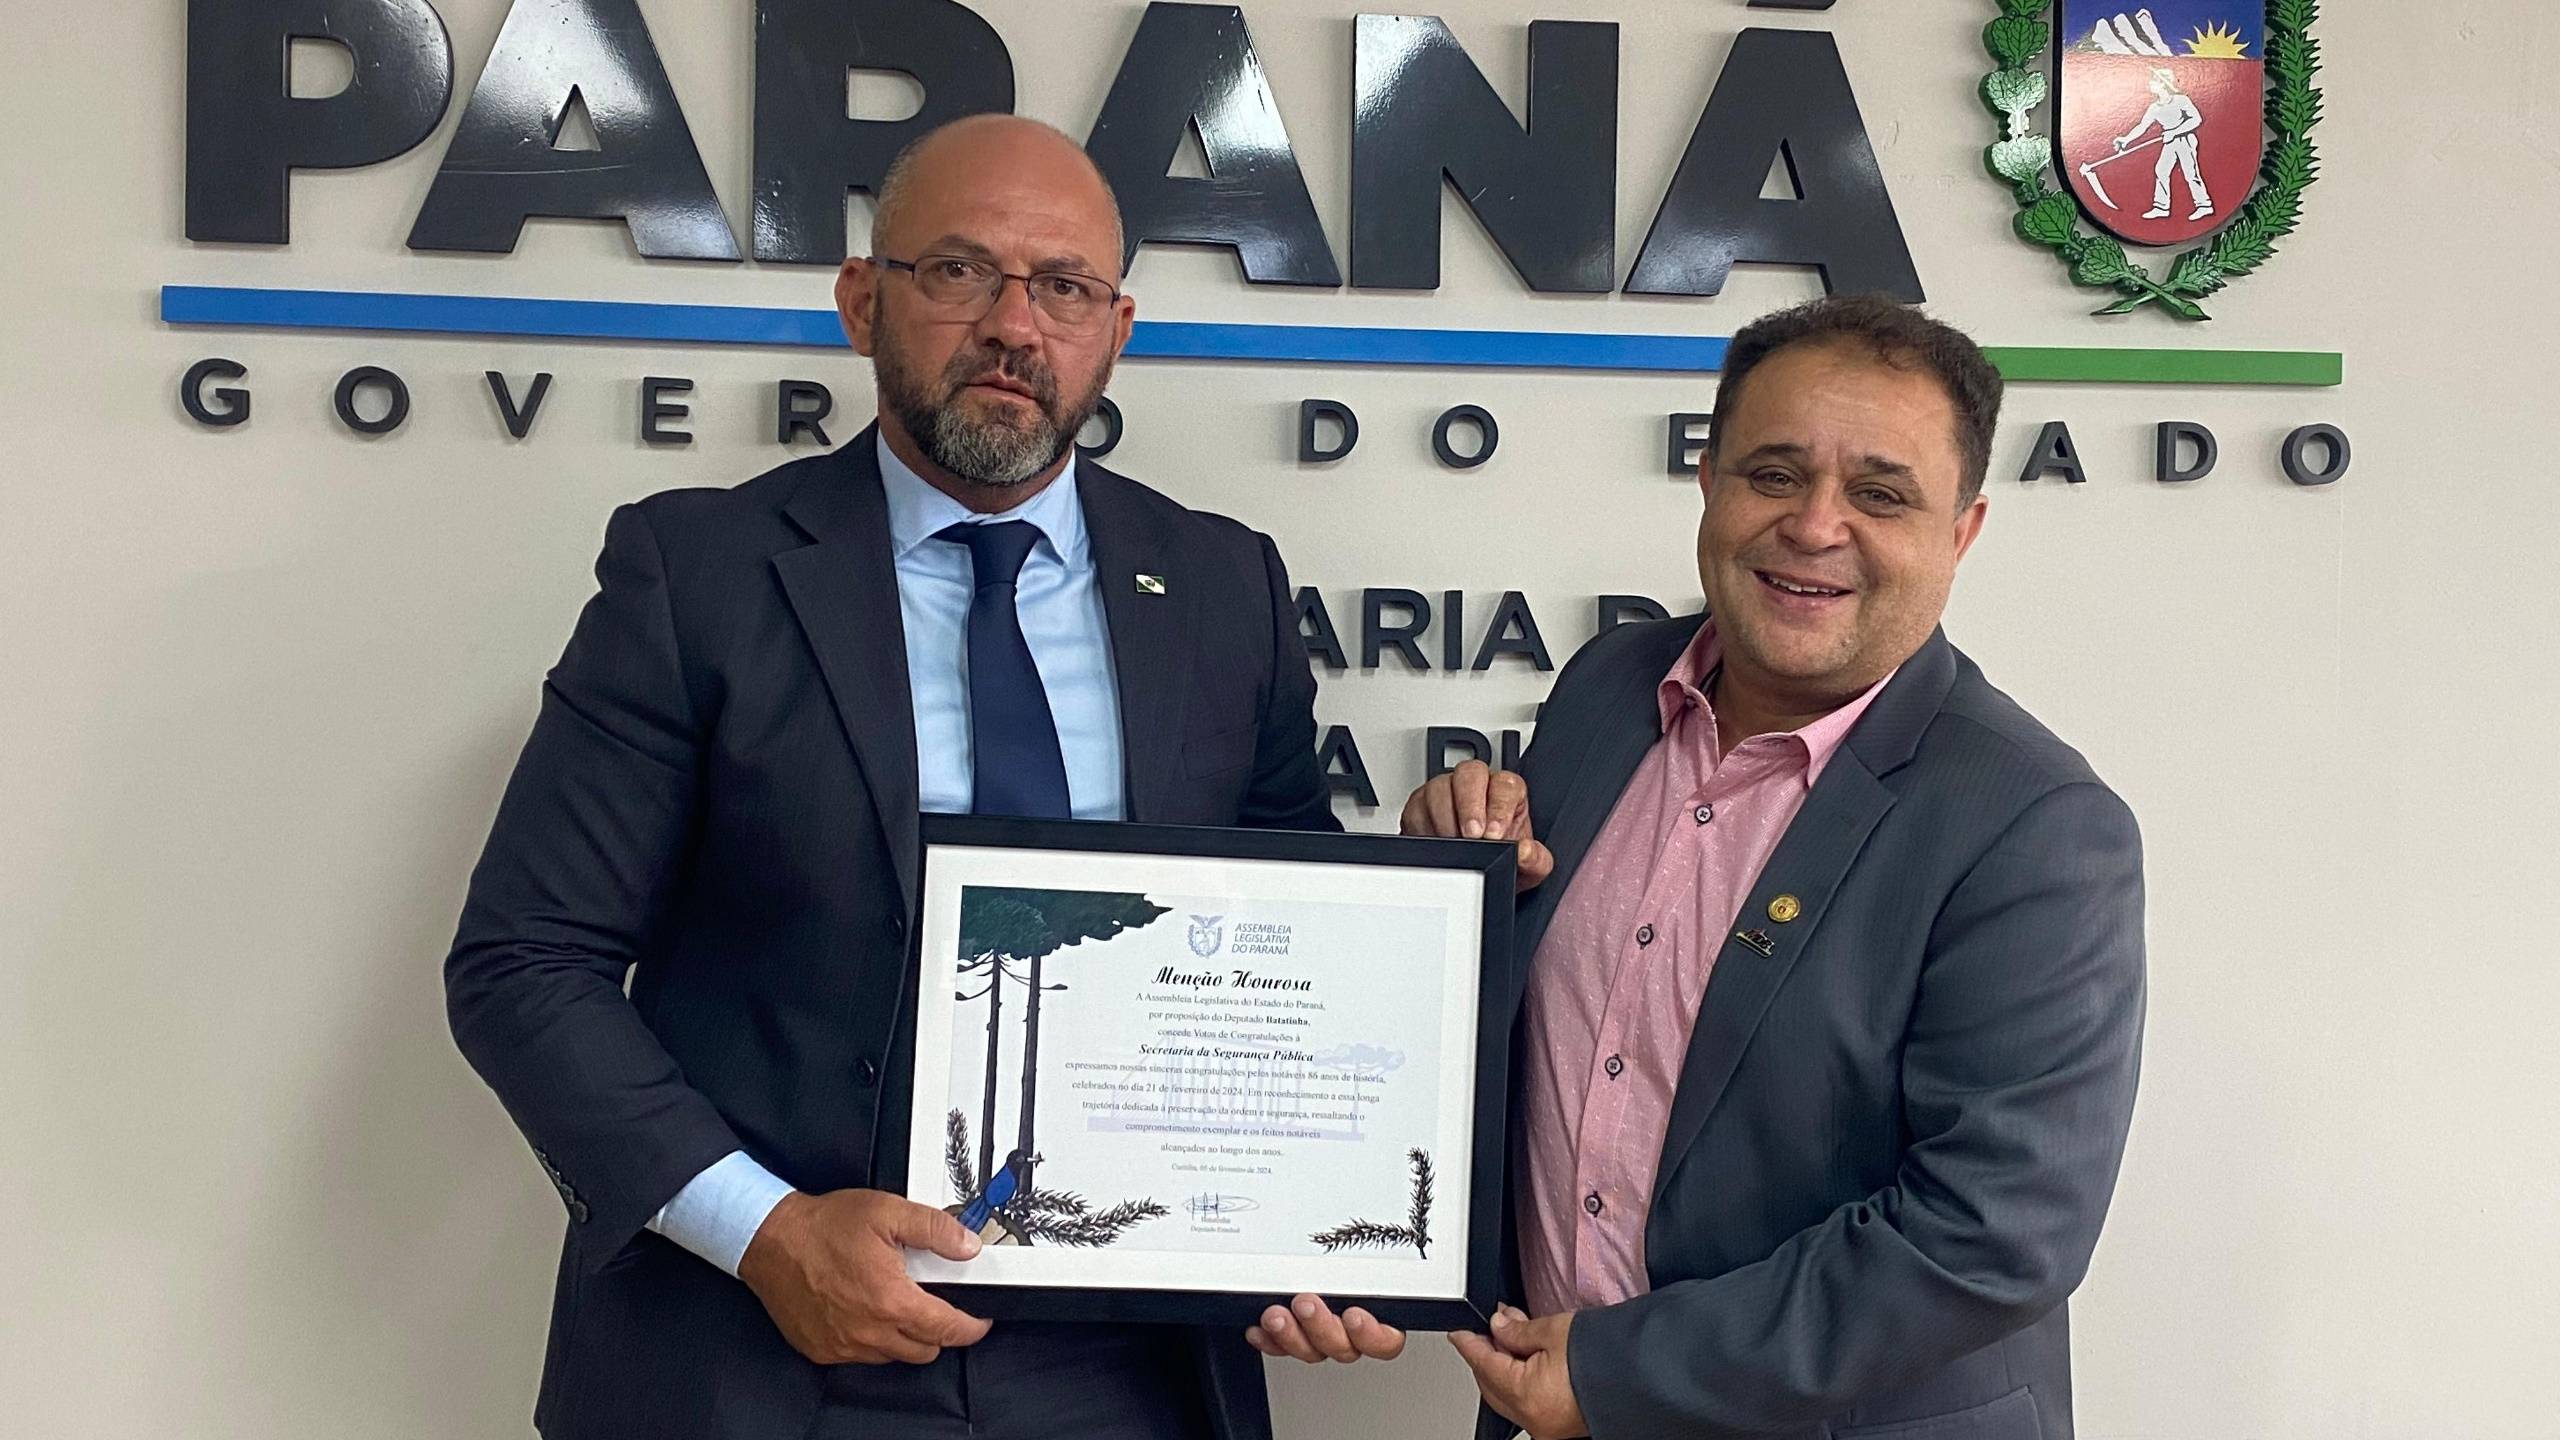 Secretaria de Estado da Segurança Pública recebe Menção Honrosa pelos 86 anos de fundação no Paraná